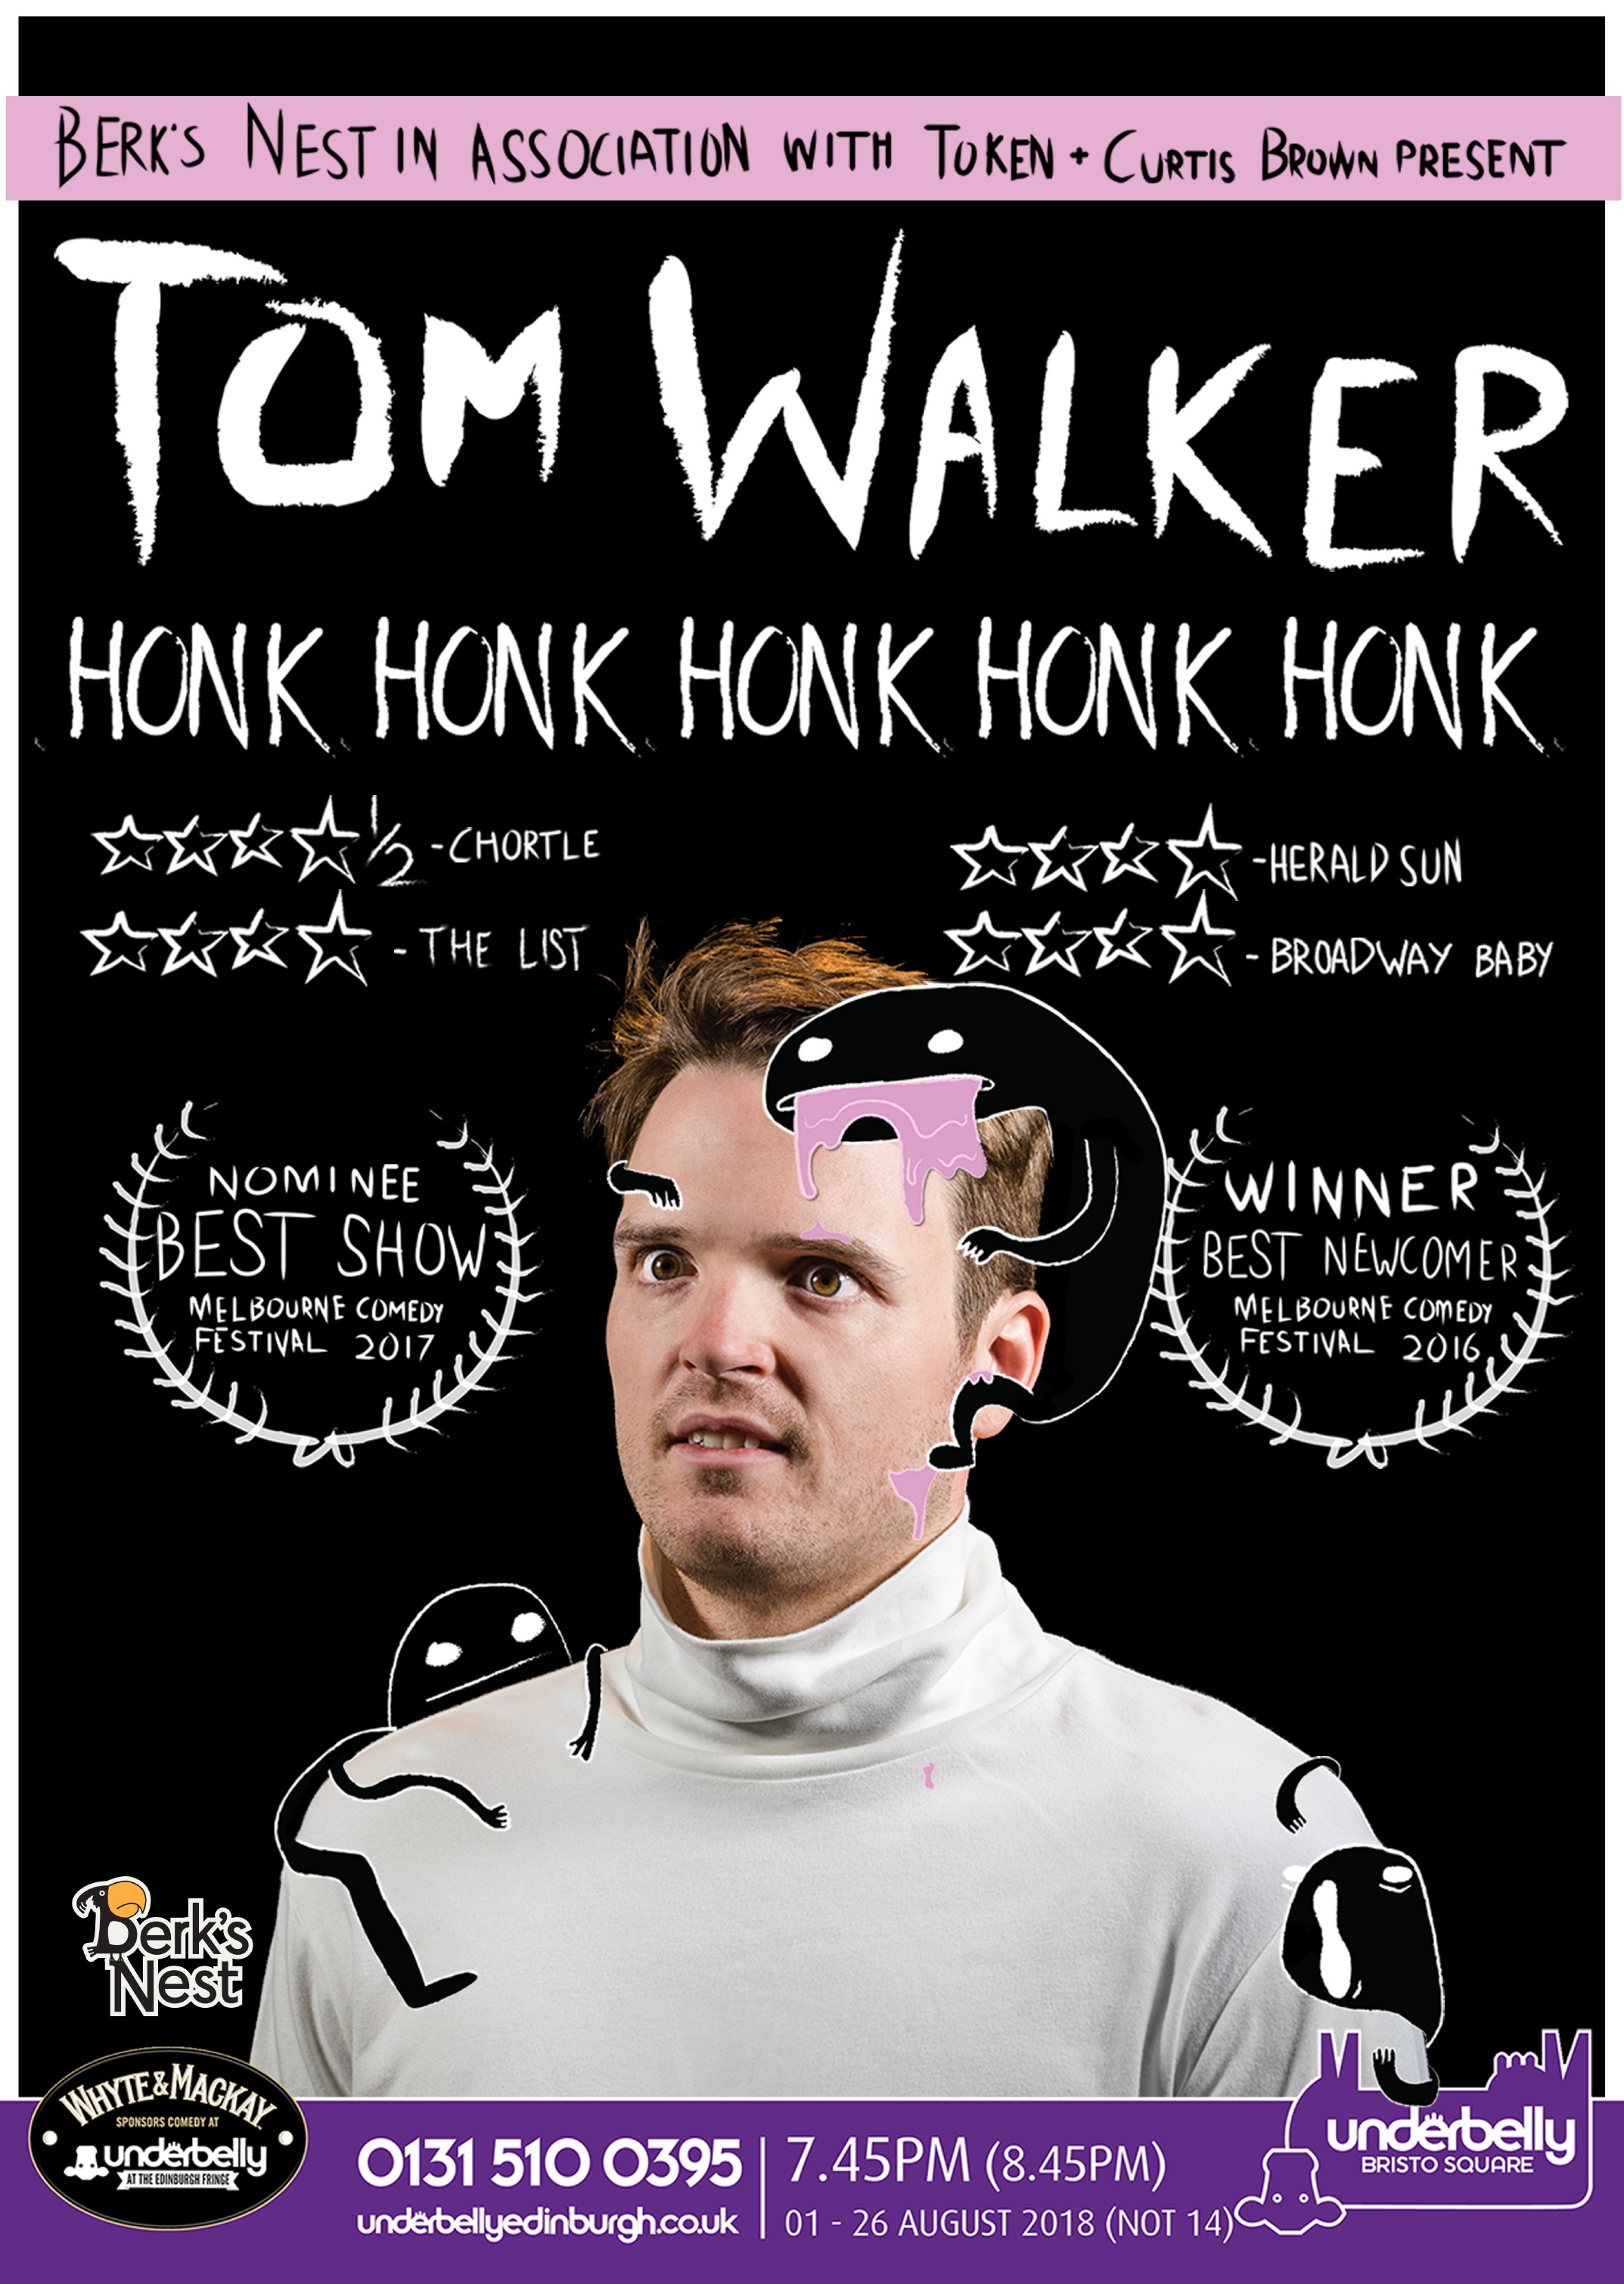 The poster for Tom Walker: Honk Honk Honk Honk Honk